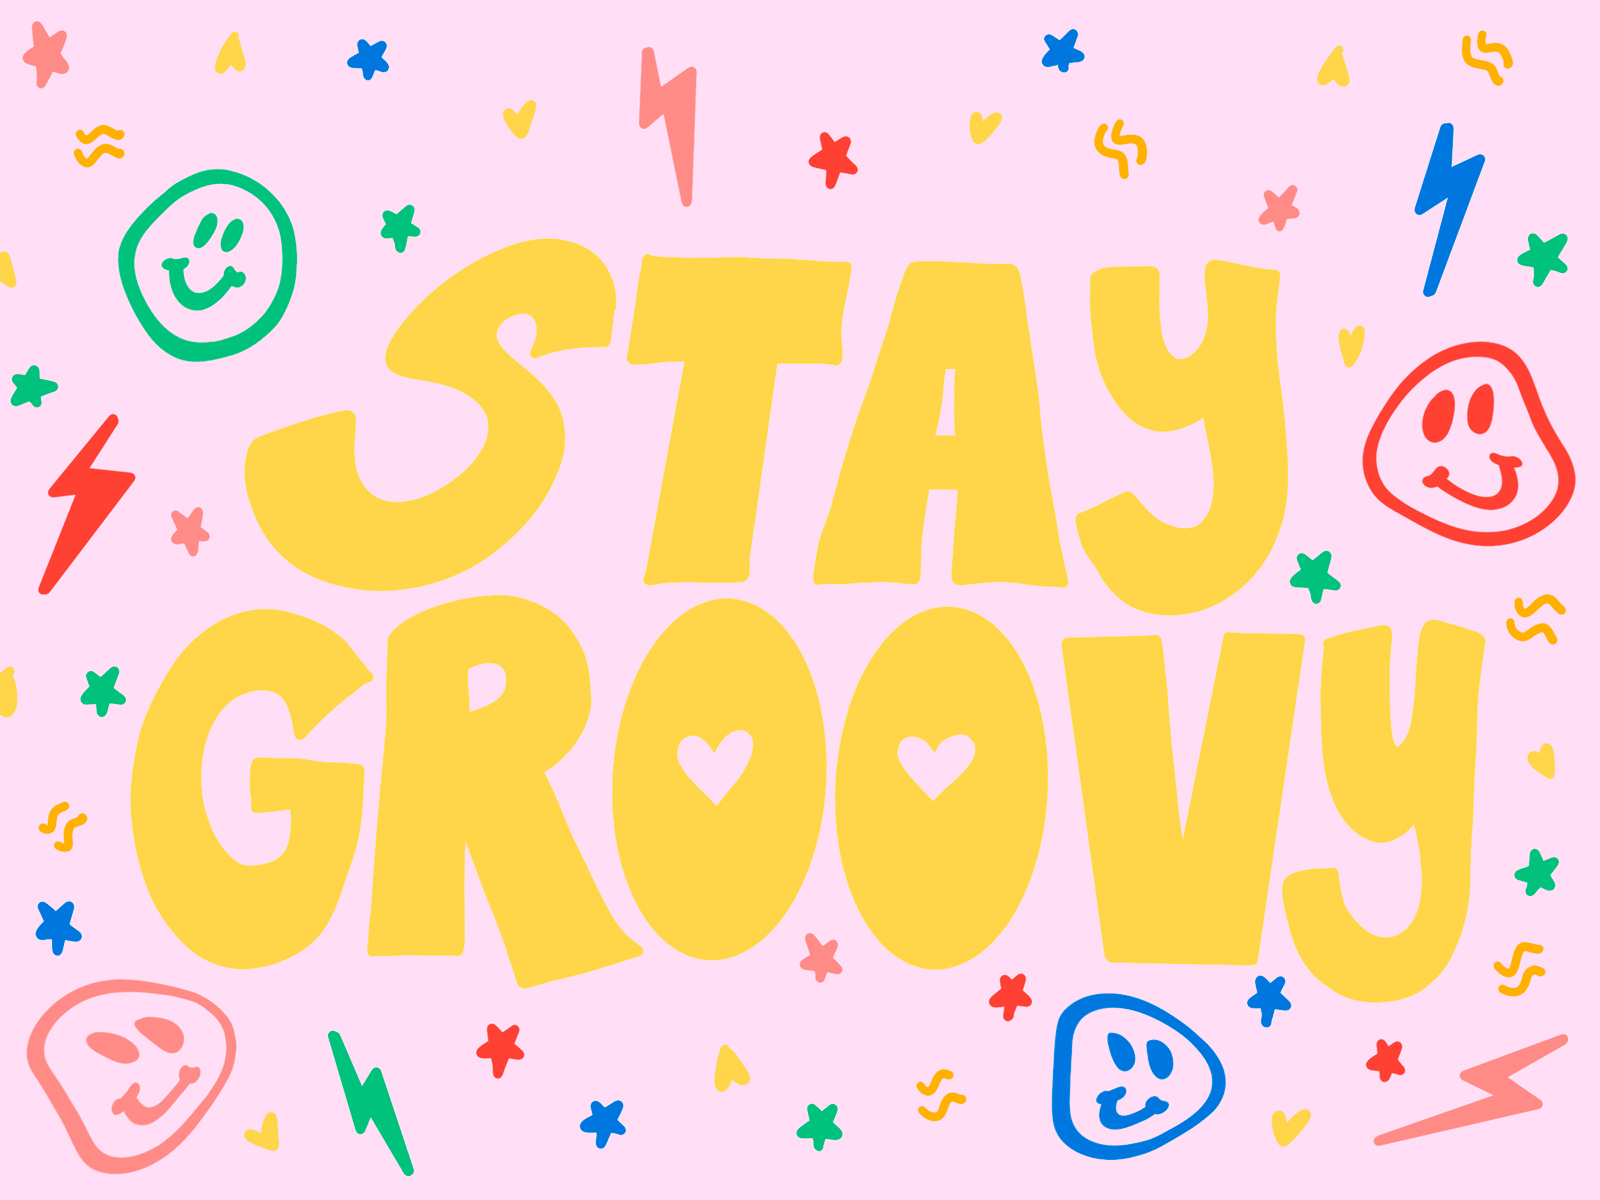 Giữ cho cuộc sống của bạn luôn tươi mới và tích cực với Stay Groovy - một thông điệp sống động như một lời nhắn cho cuộc sống của bạn. Hình ảnh minh họa đầy sáng tạo và màu sắc sẽ giúp re-energize cuộc sống của bạn và khiến bạn tỏa sáng như ngày đầu tiên.